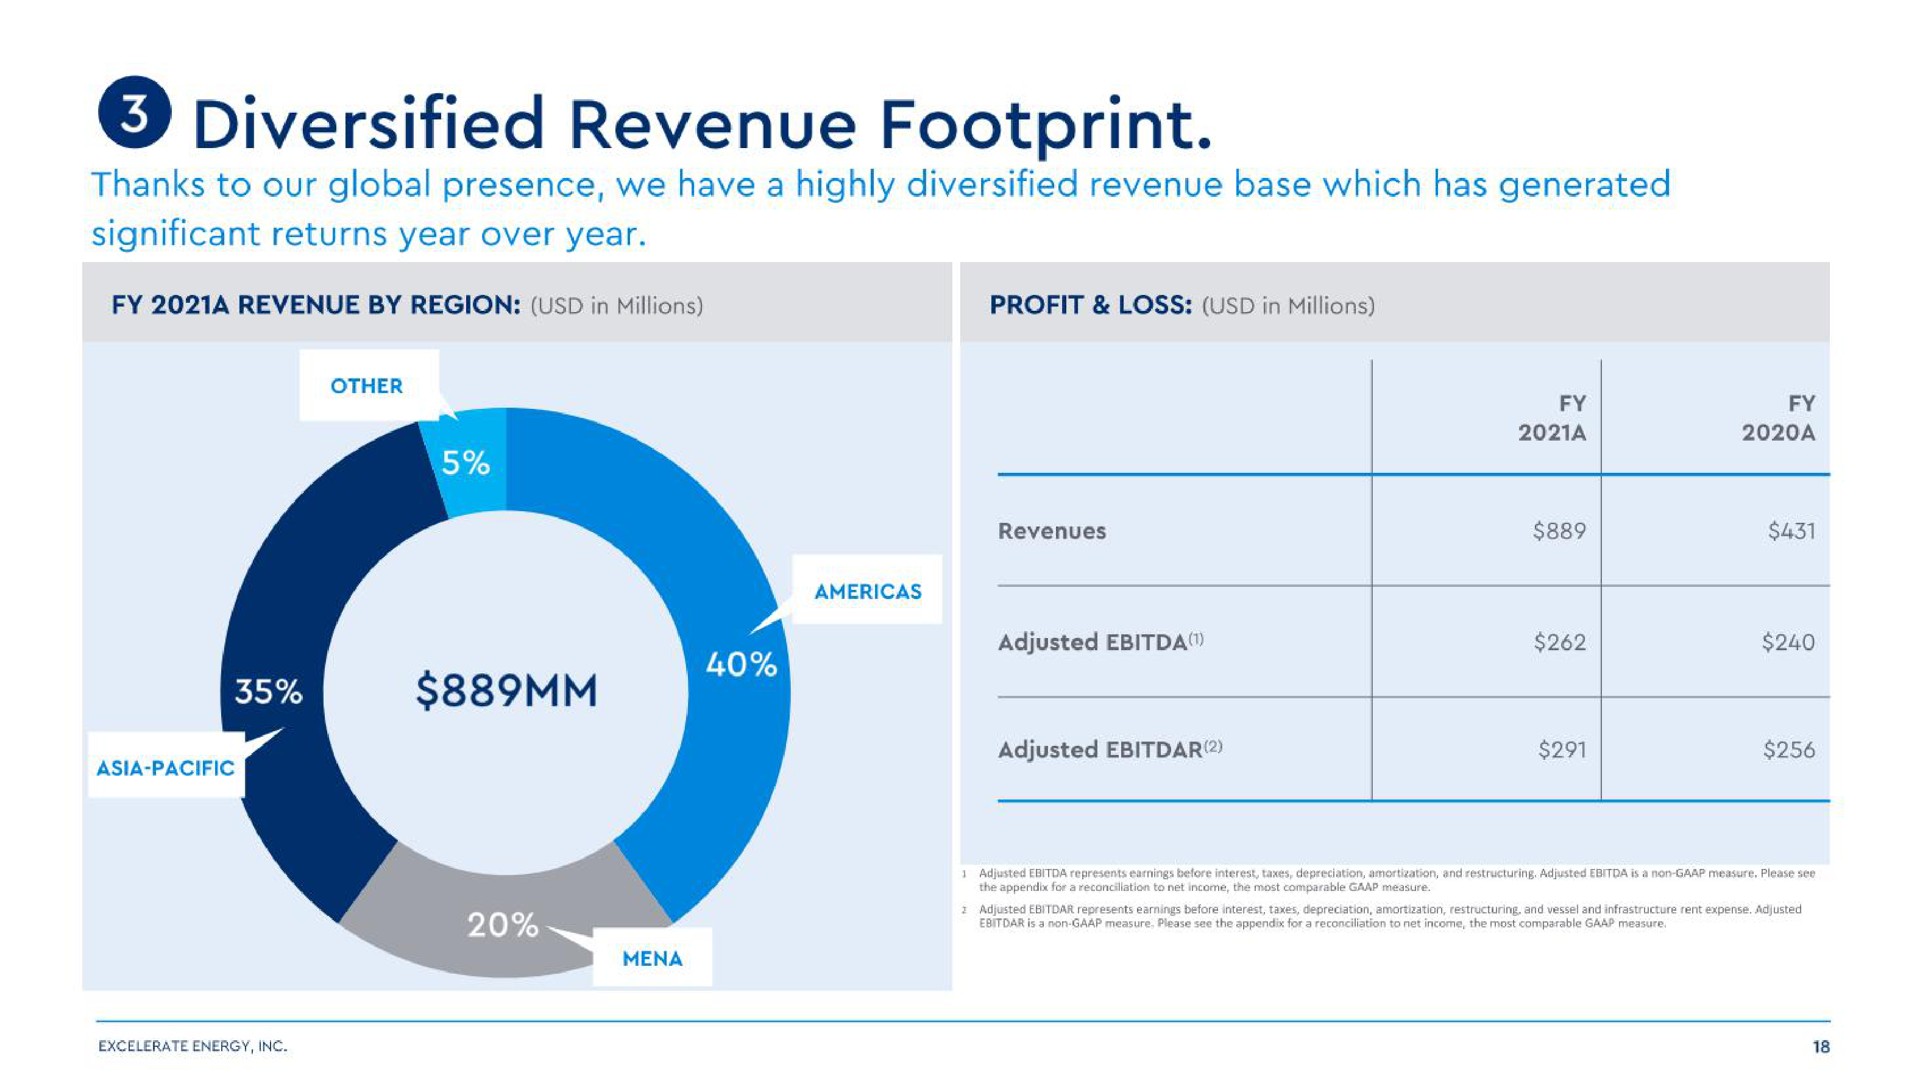 diversified revenue footprint | Excelerate Energy